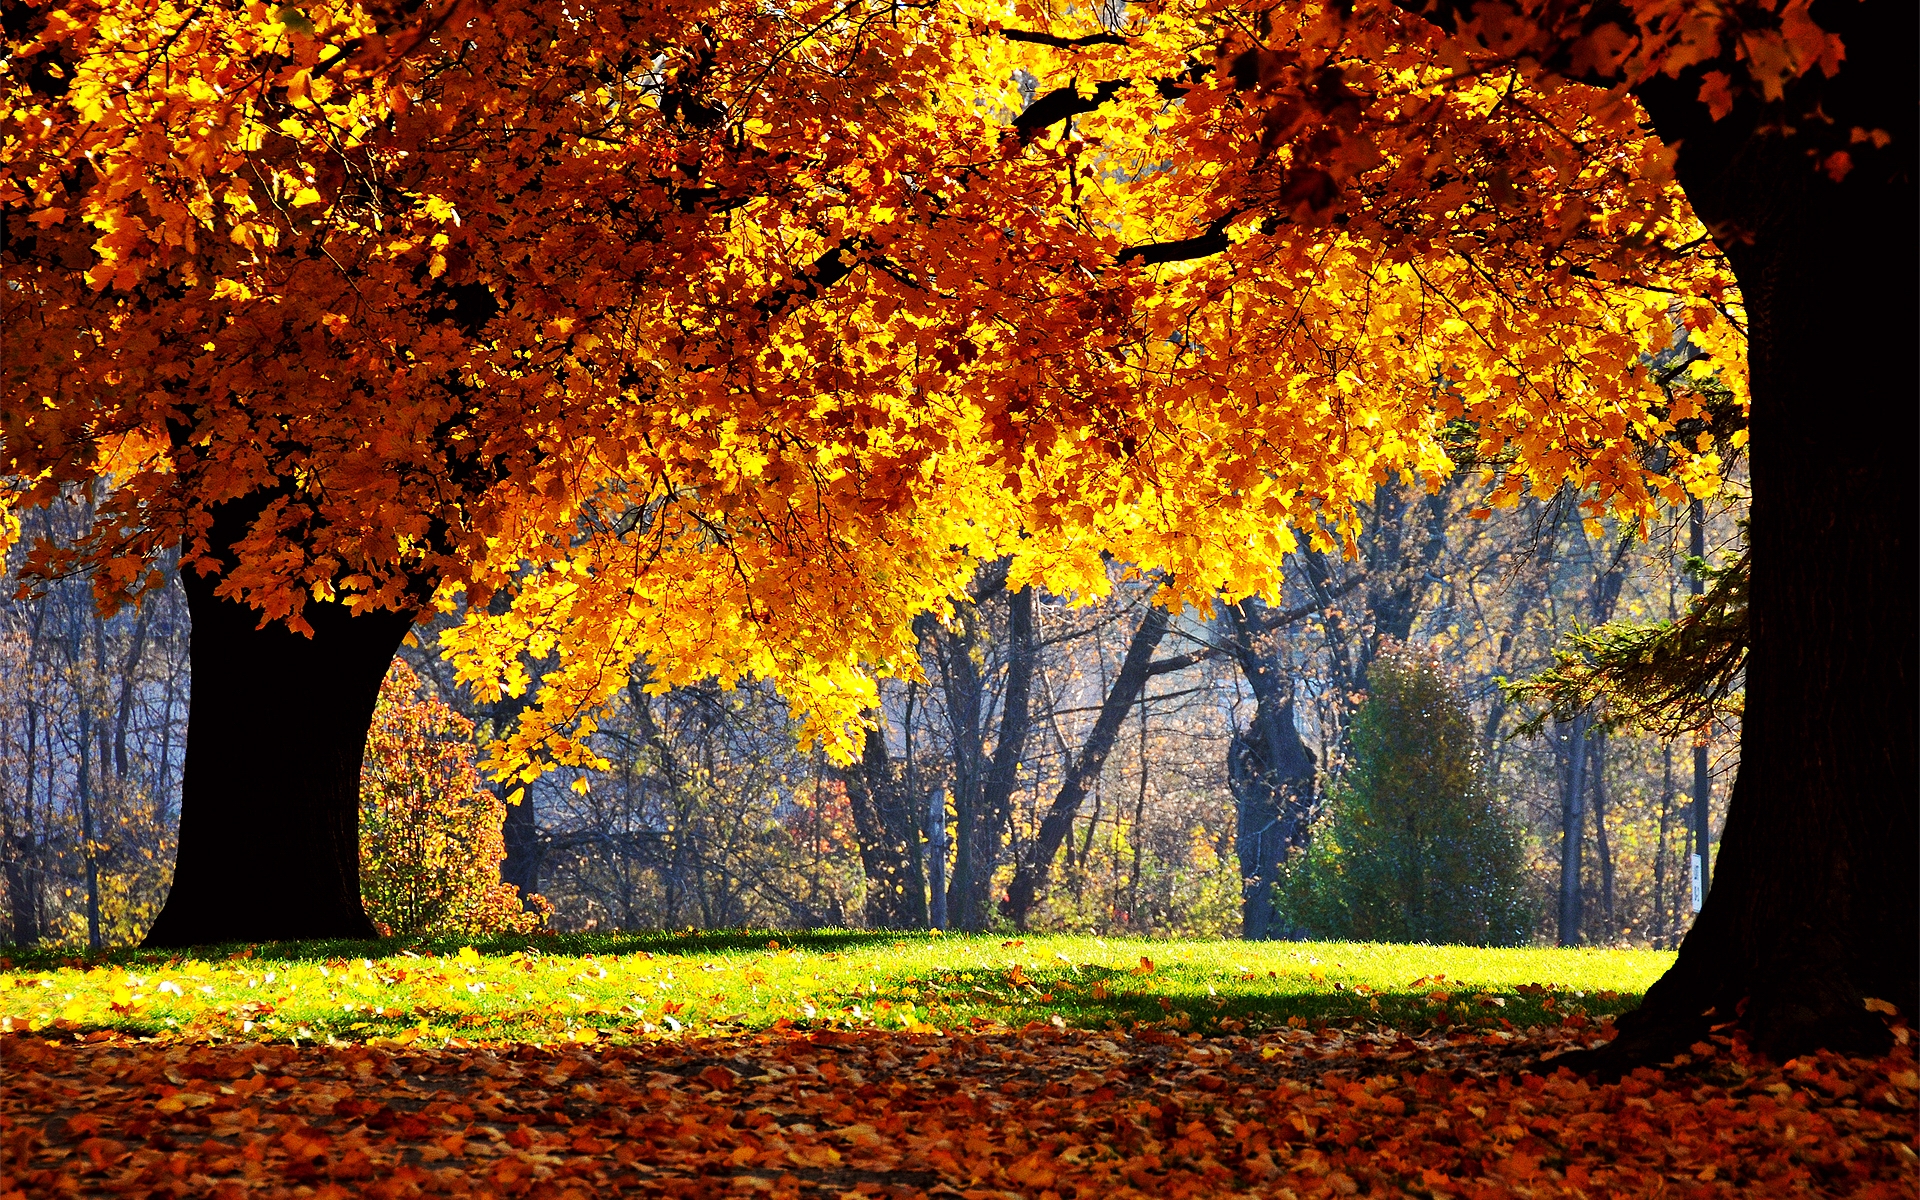 Nature_Seasons_Autumn_Indian_summer_0348